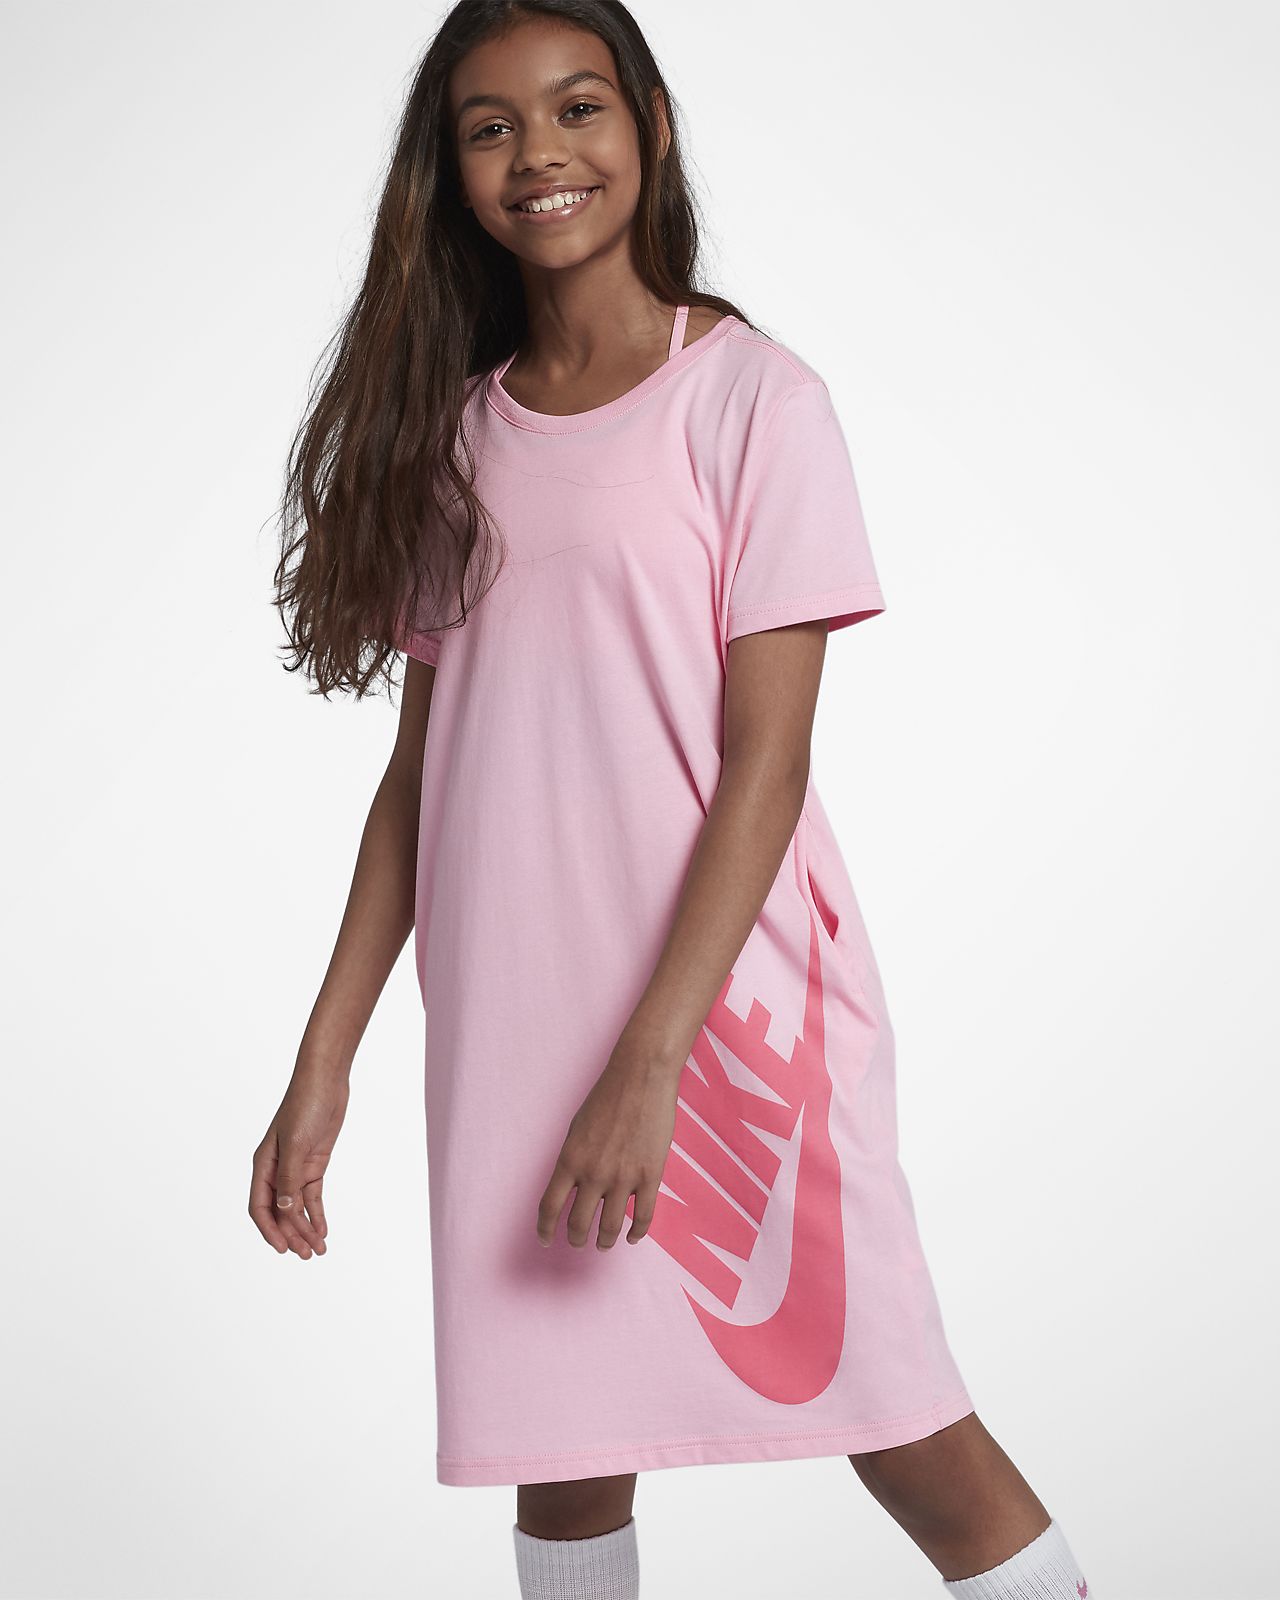 Длинная футболка вайлдберриз. Платье футболка для девочки. Длинные футболки для девочек. Платье футболка розовое. Платье футболка для девочки 12 лет.